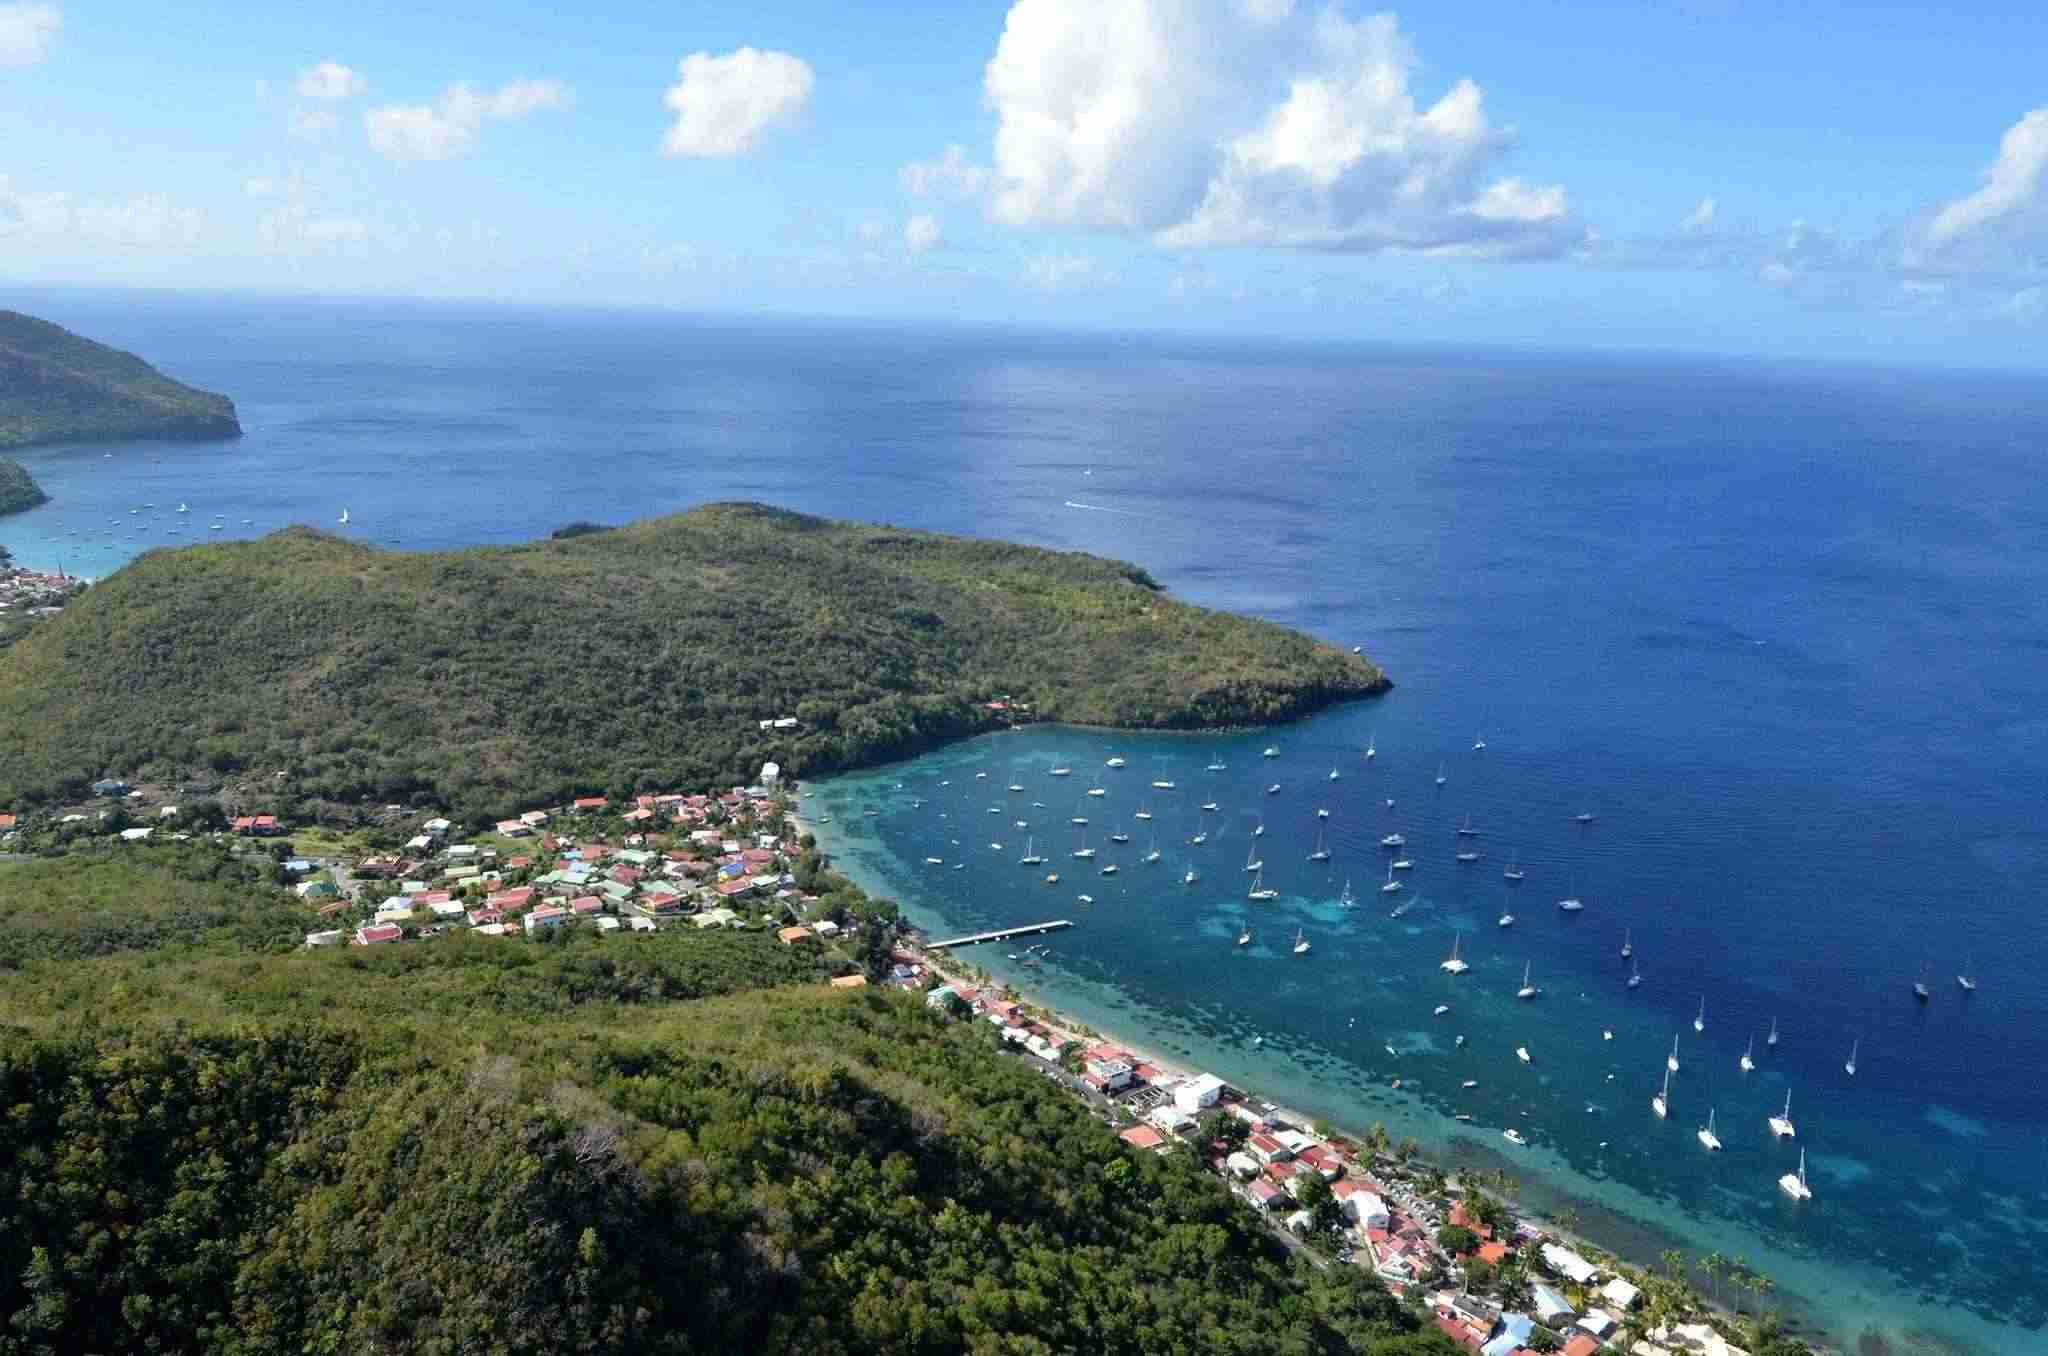 Conditions et règles d'utilisation - Guide de voyage de la martinique - Bons plans Martinique - Plage touristique de Grande Anse d' Arlet en Martinique